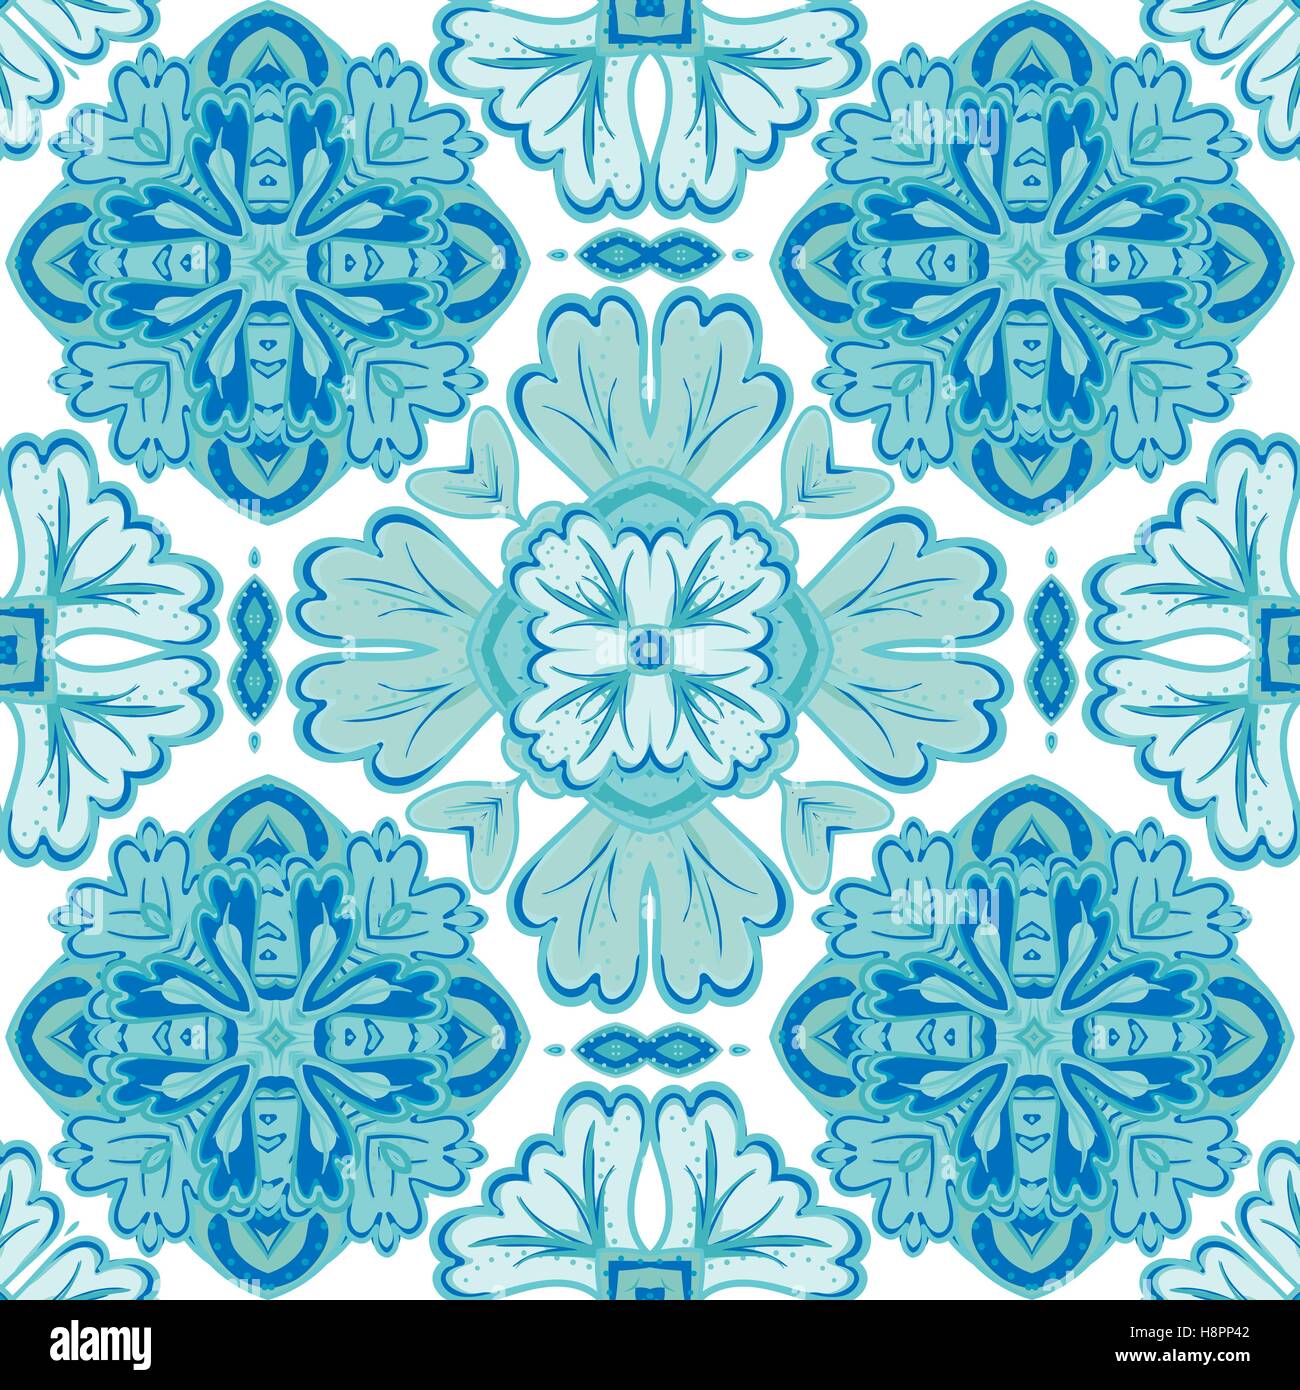 Nahtlose Patchwork-Muster von marokkanisch, portugiesischen Fliesen, Azulejo, Ornamente. Für Tapeten, Musterfüllungen, Oberfläche Texturen Stock Vektor